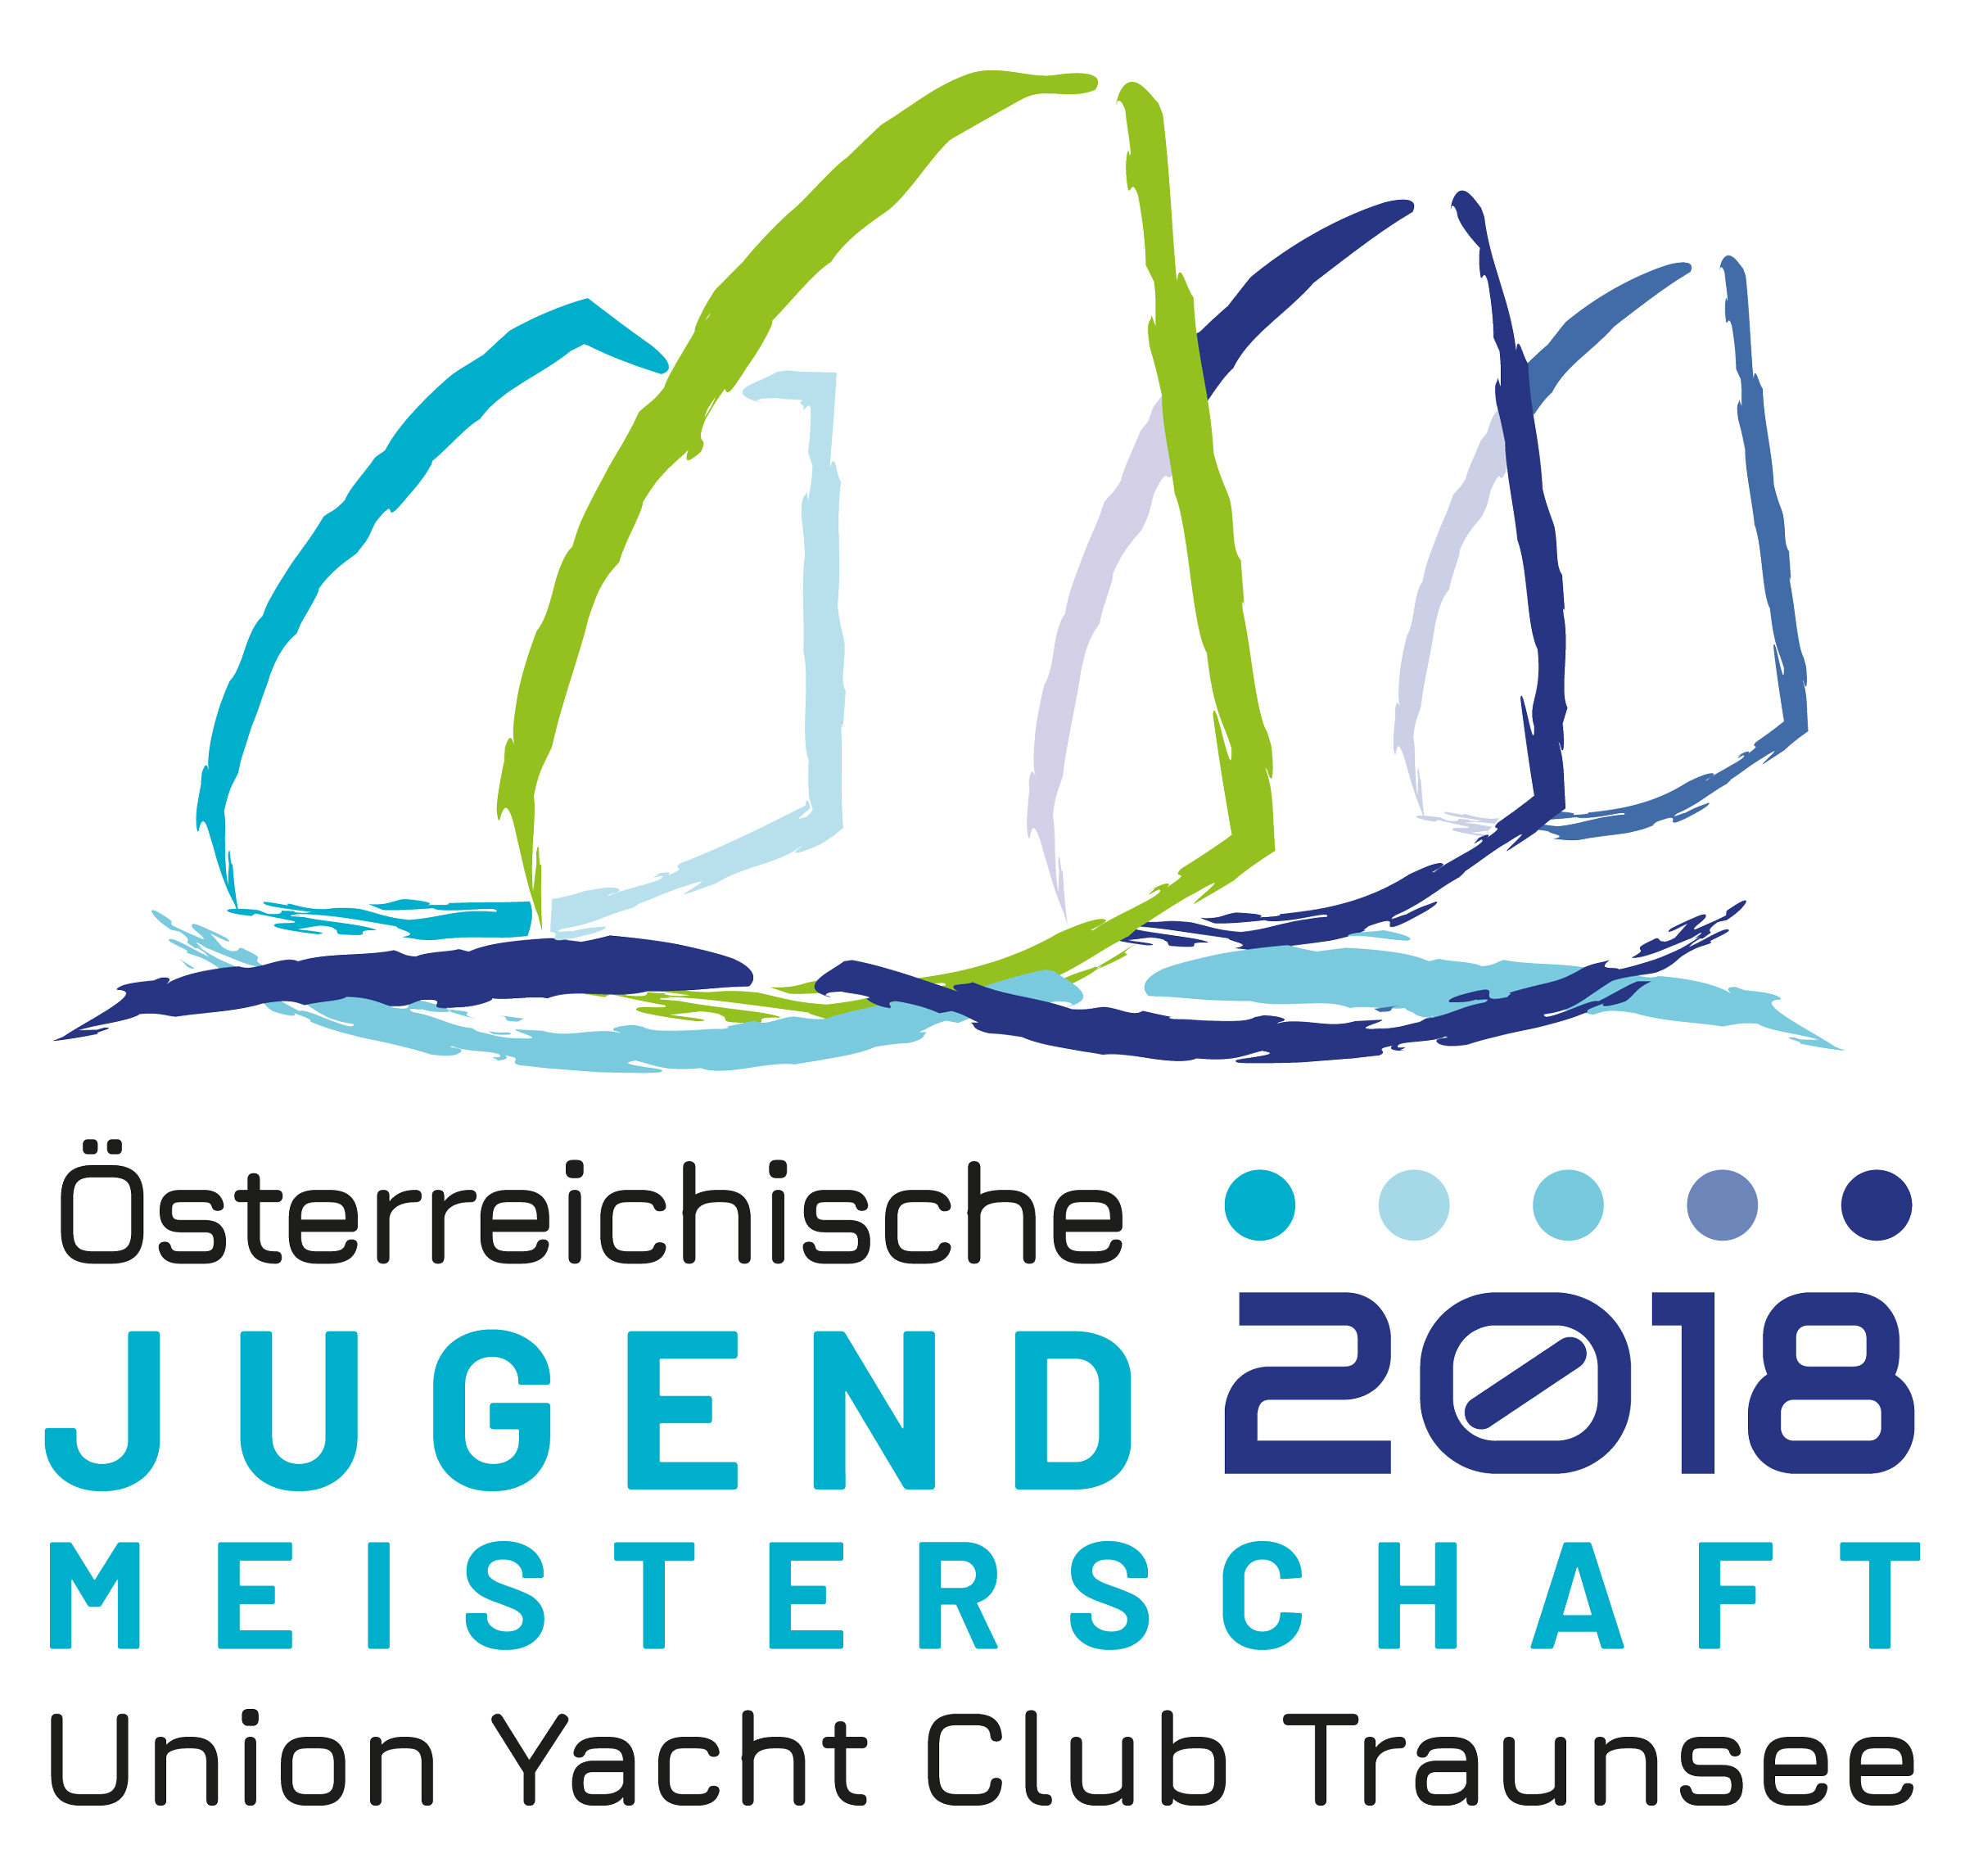 ÖJM-Logo 2018 - UYCT